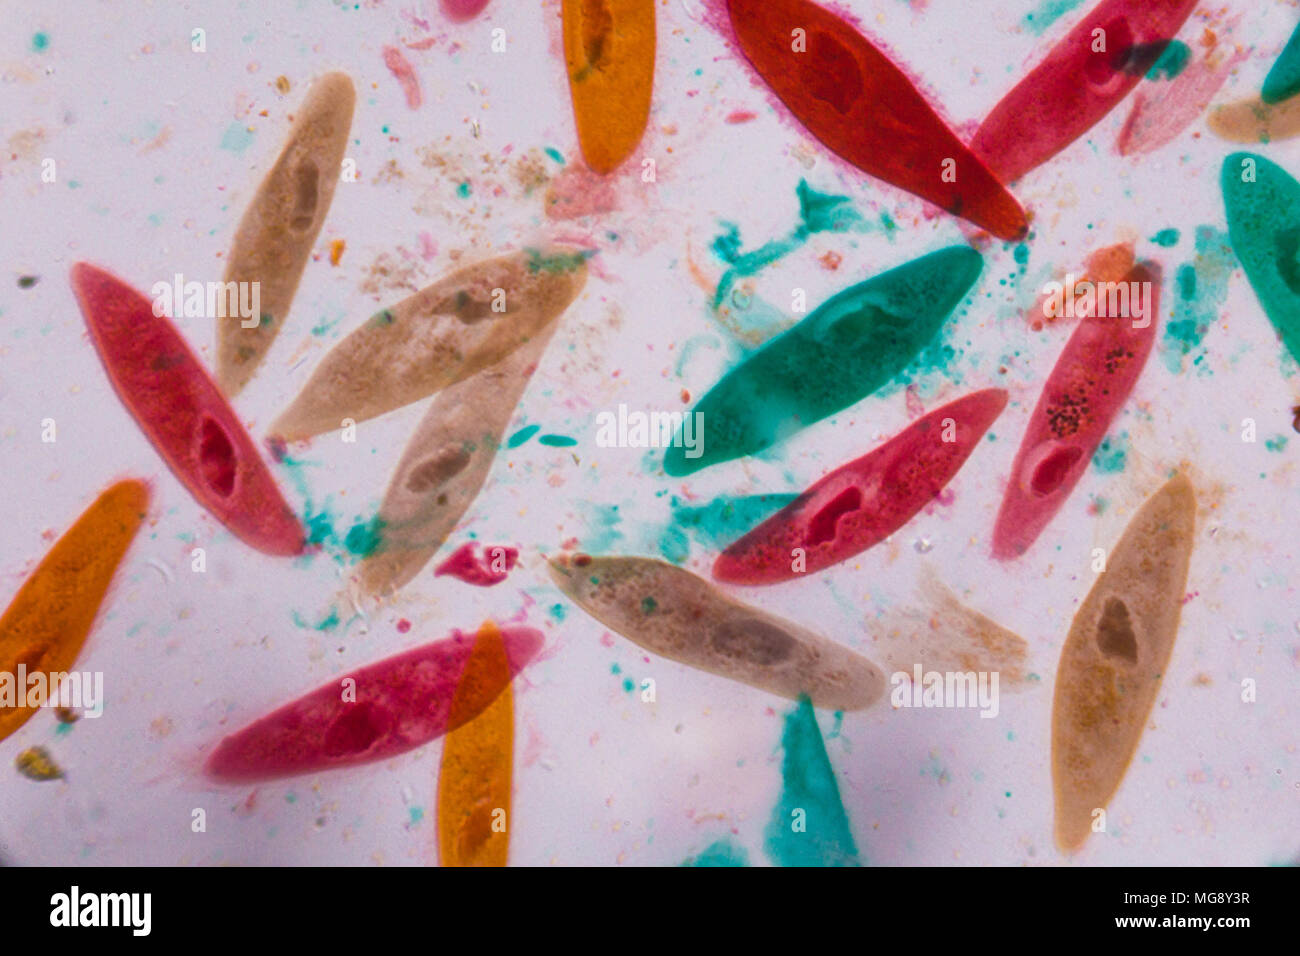 Paramecio caudatum sotto il microscopio - forme astratte in colore verde, rosso, arancione e marrone su sfondo bianco. Foto Stock